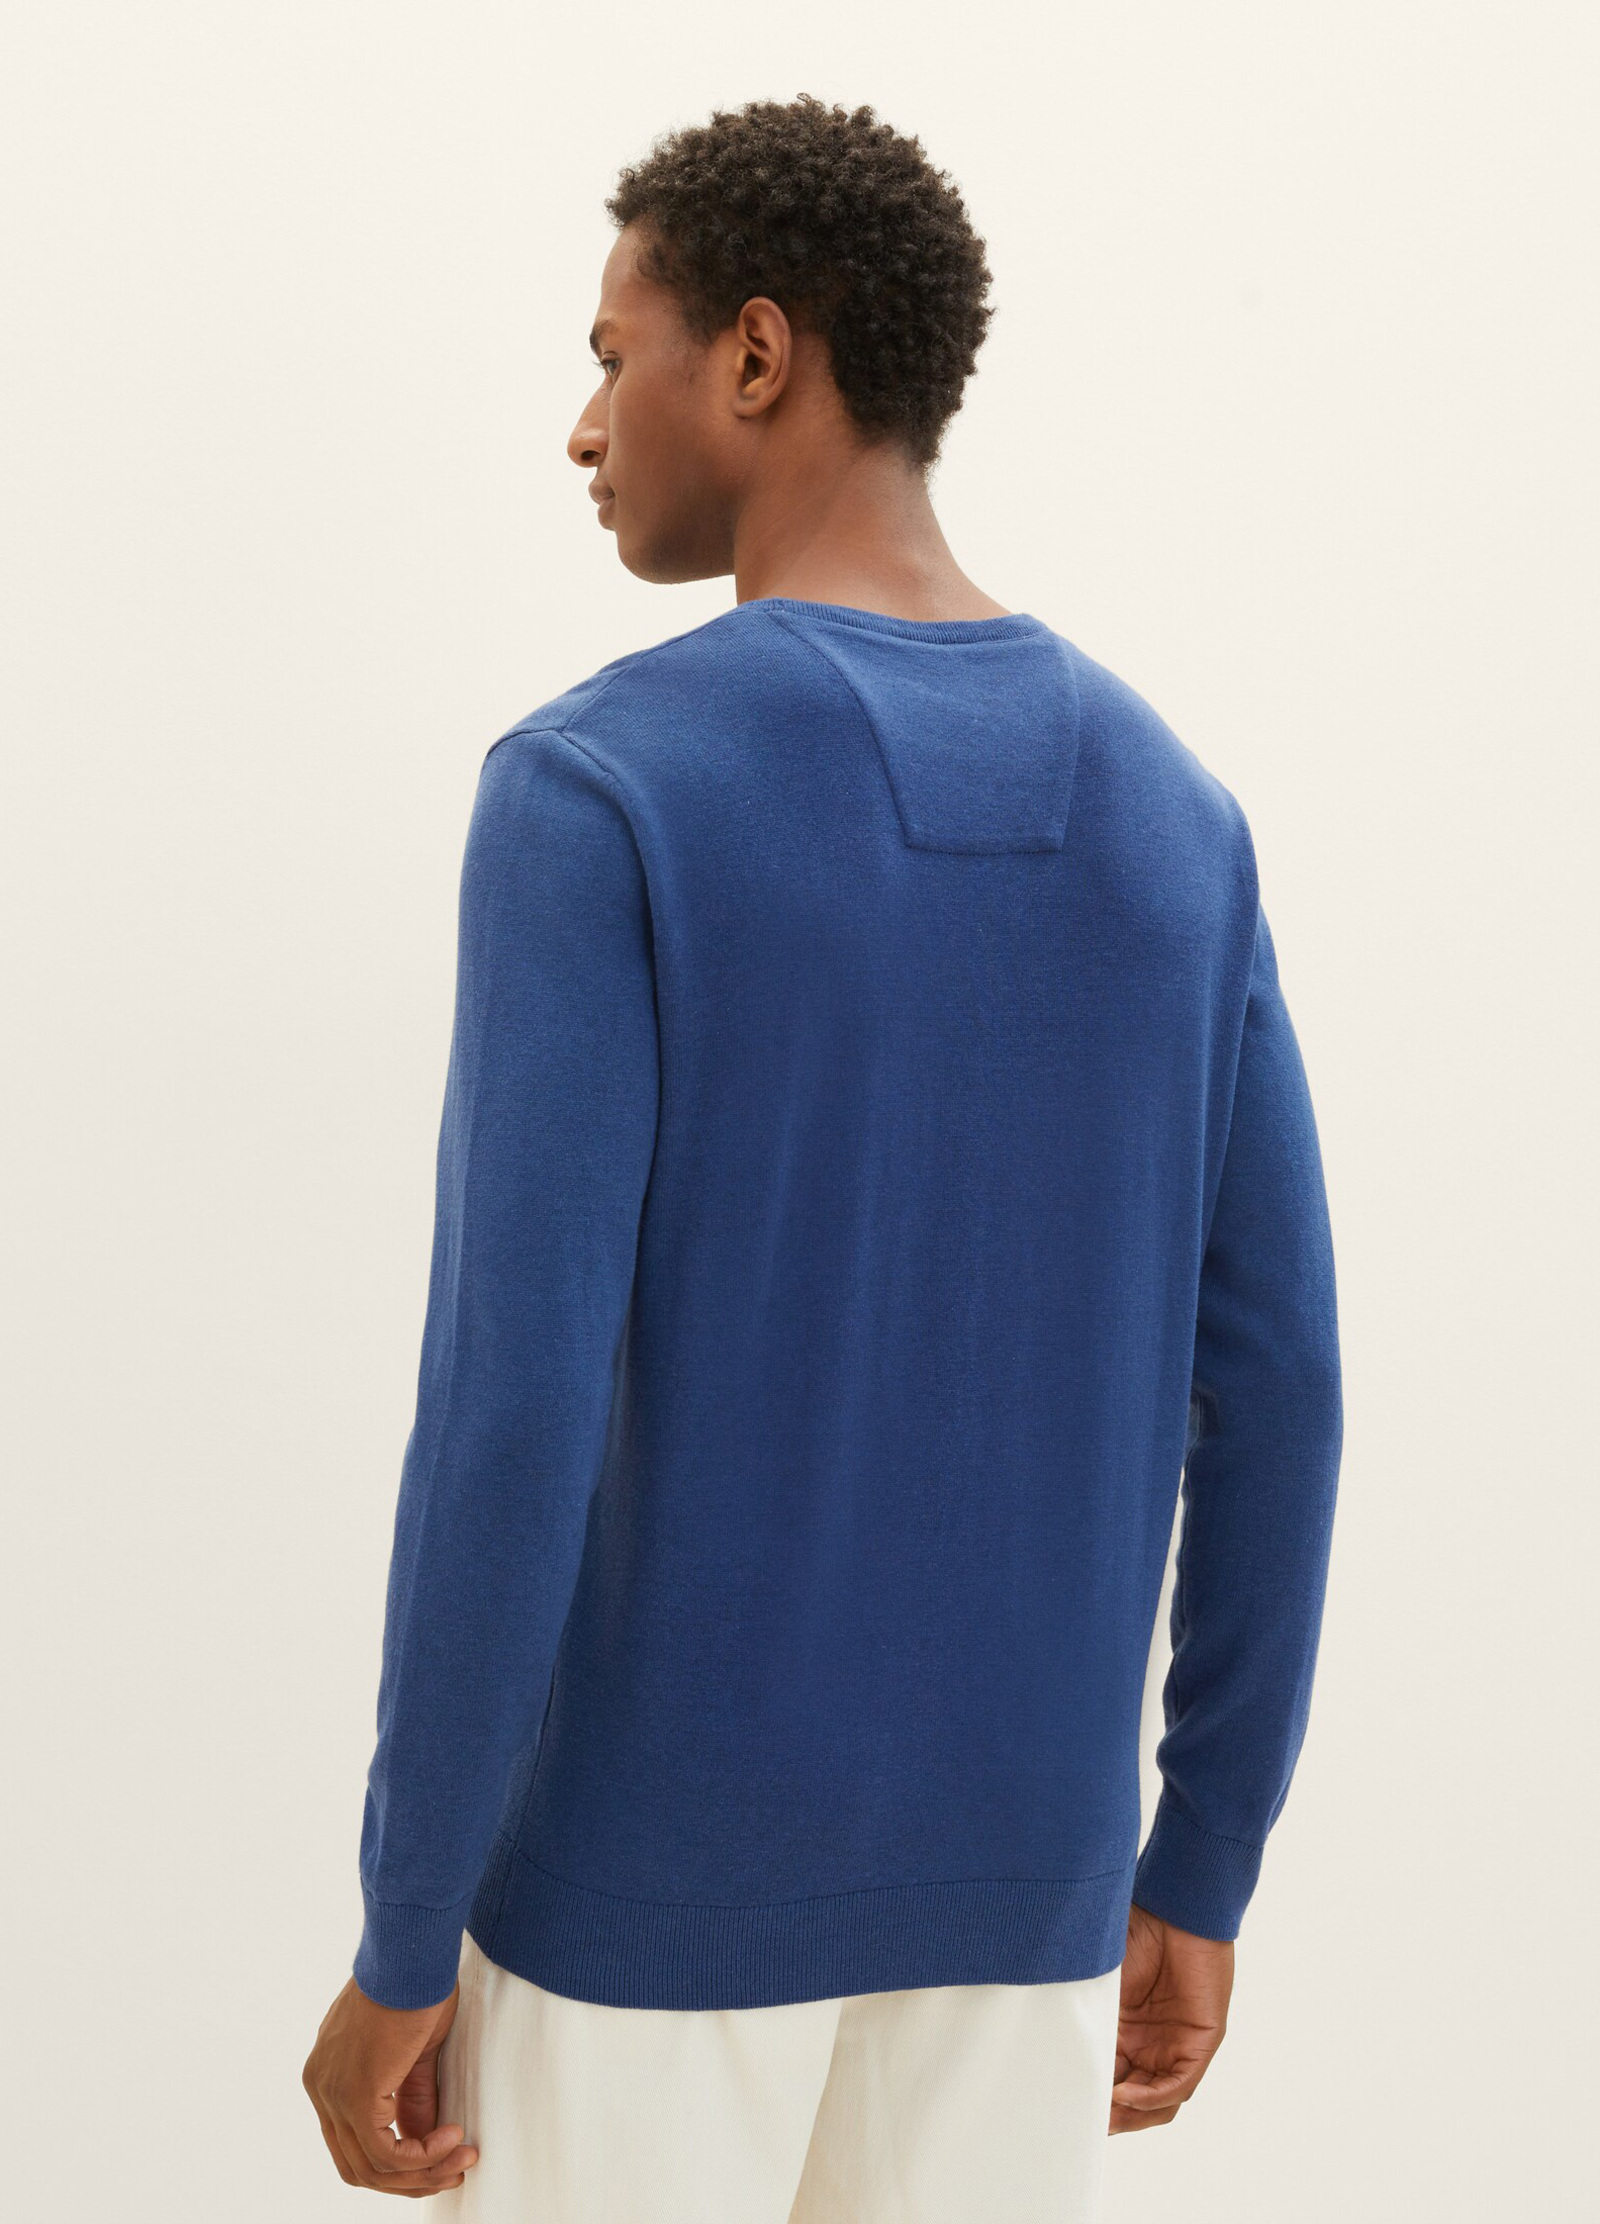 Tom Tailor® Mottled Blue Sweater Knitted Dark Melange L Size Hockey 